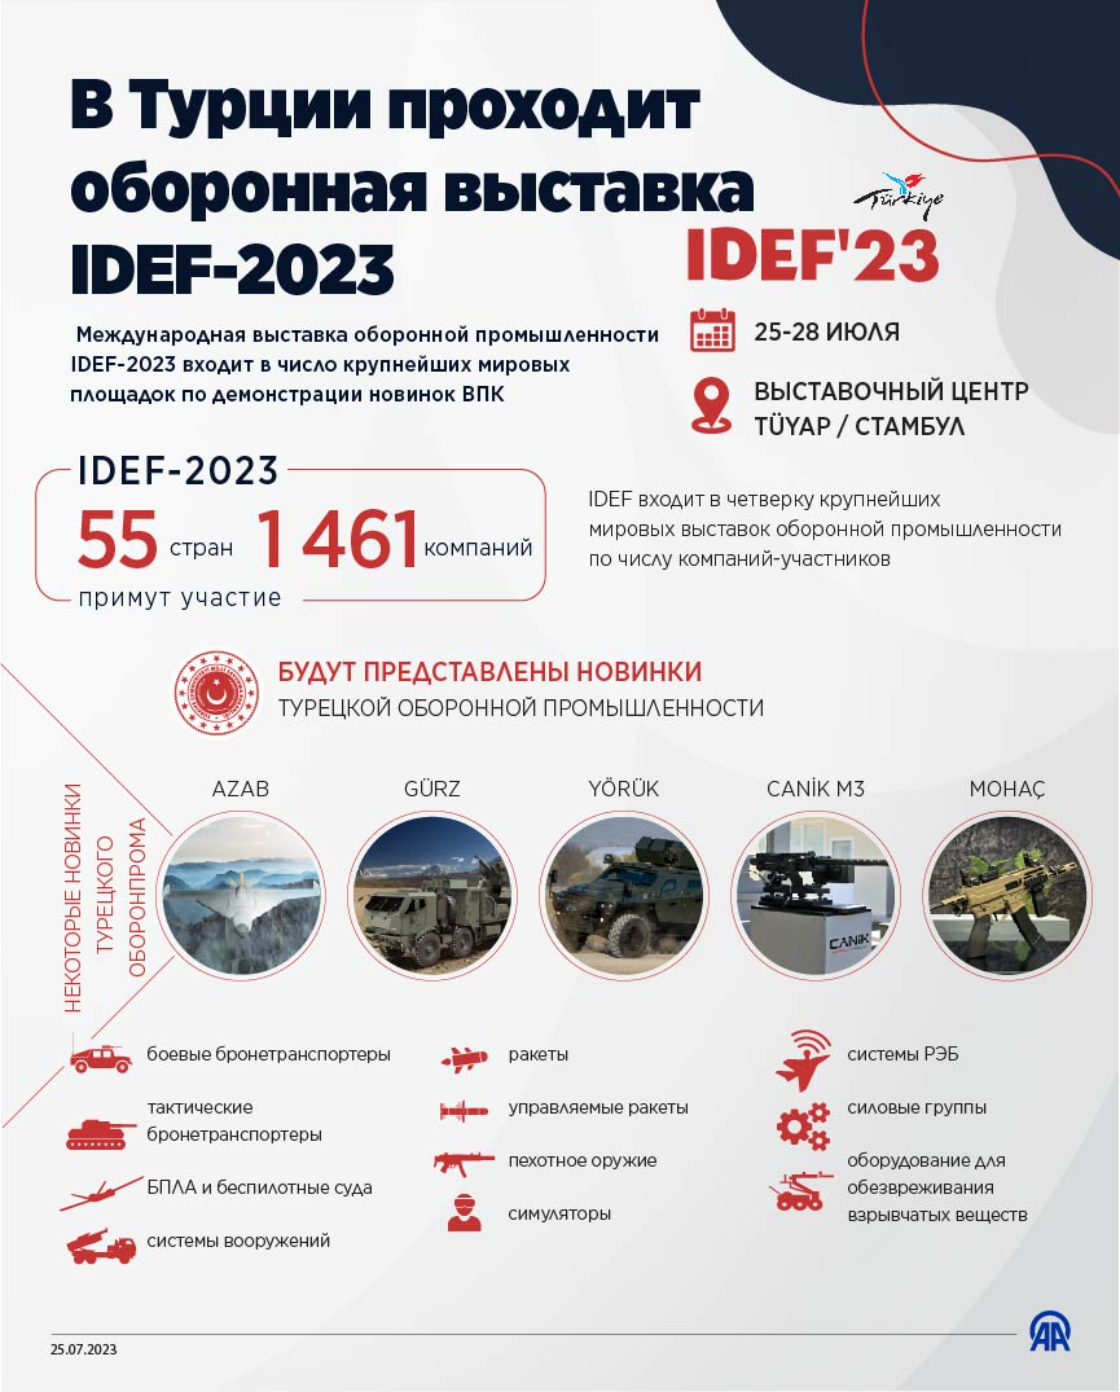 В Турции проходит оборонная выставка IDEF-2023 